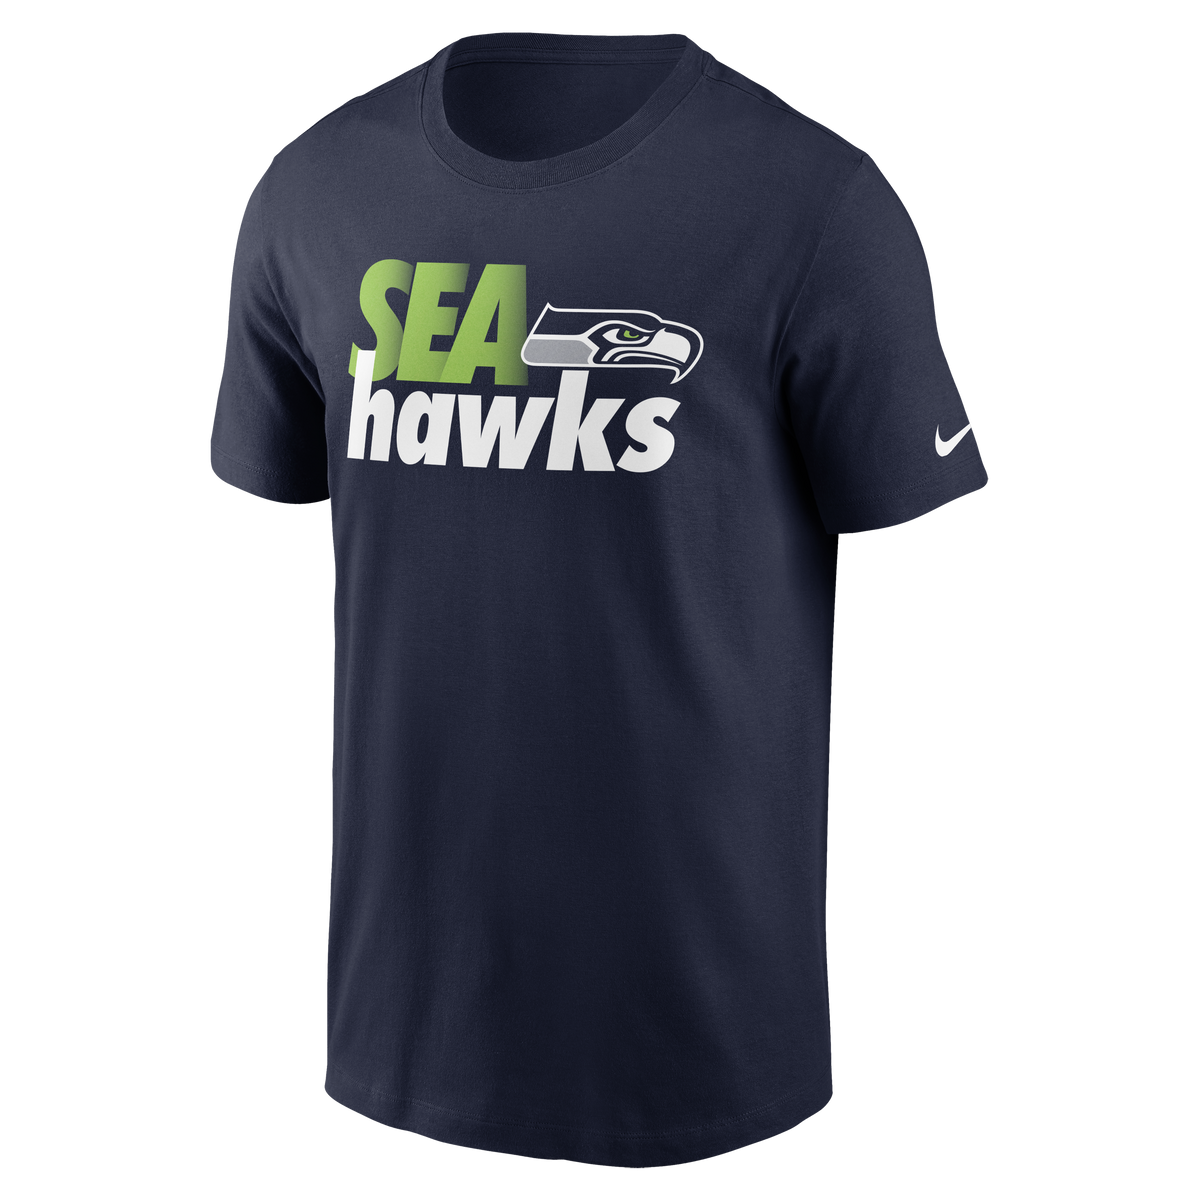 NFL Seattle Seahawks Nike SEAhawks Tee